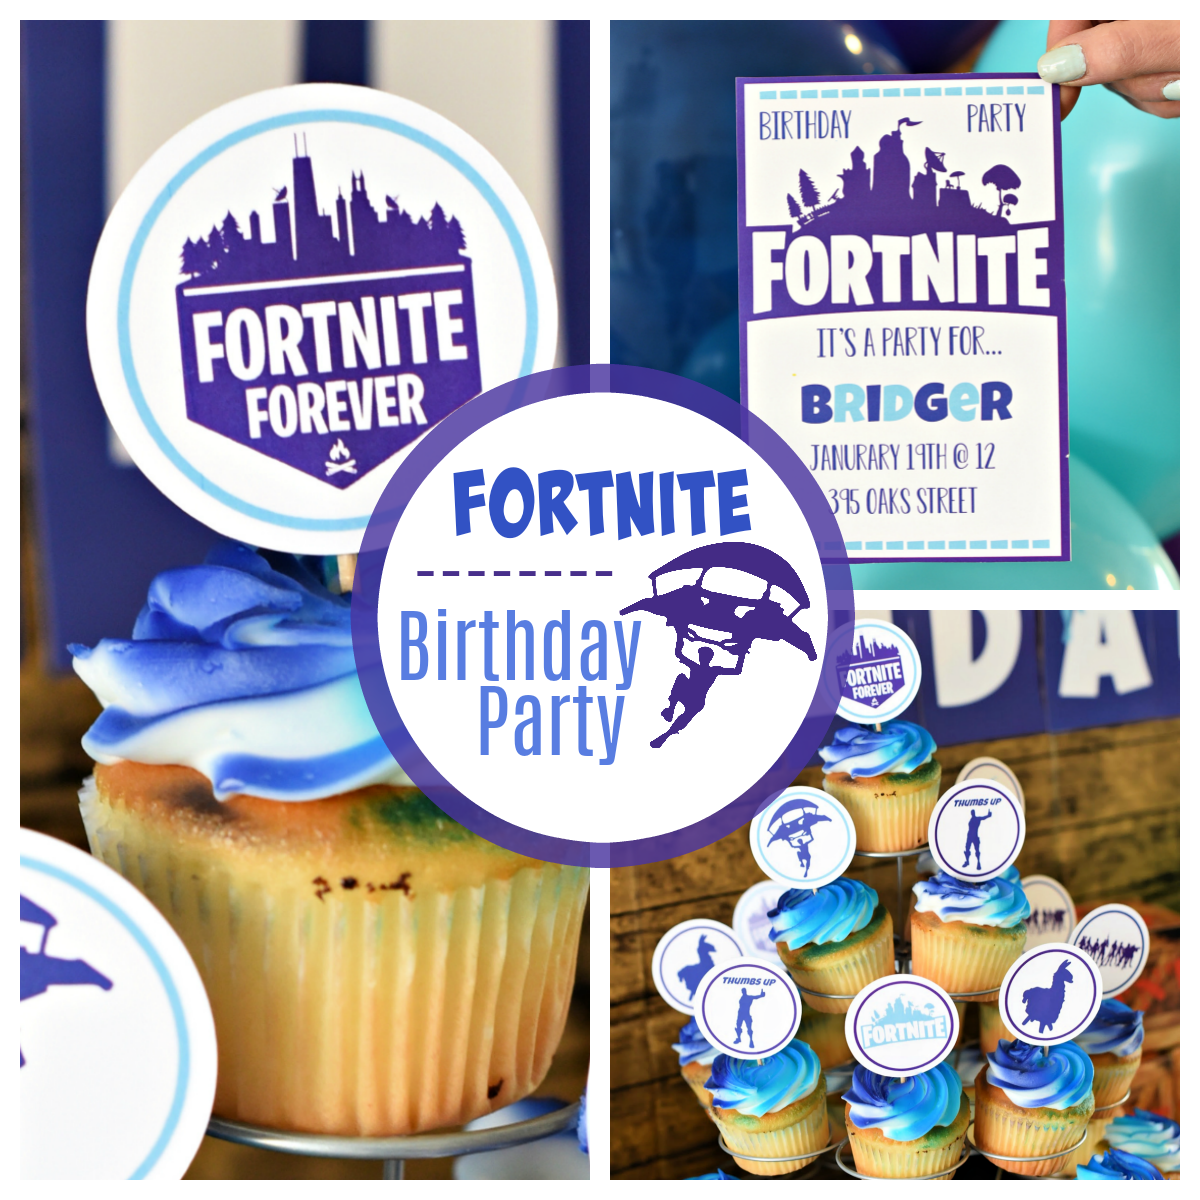 Fun Fortnite Birthday Party Idea: